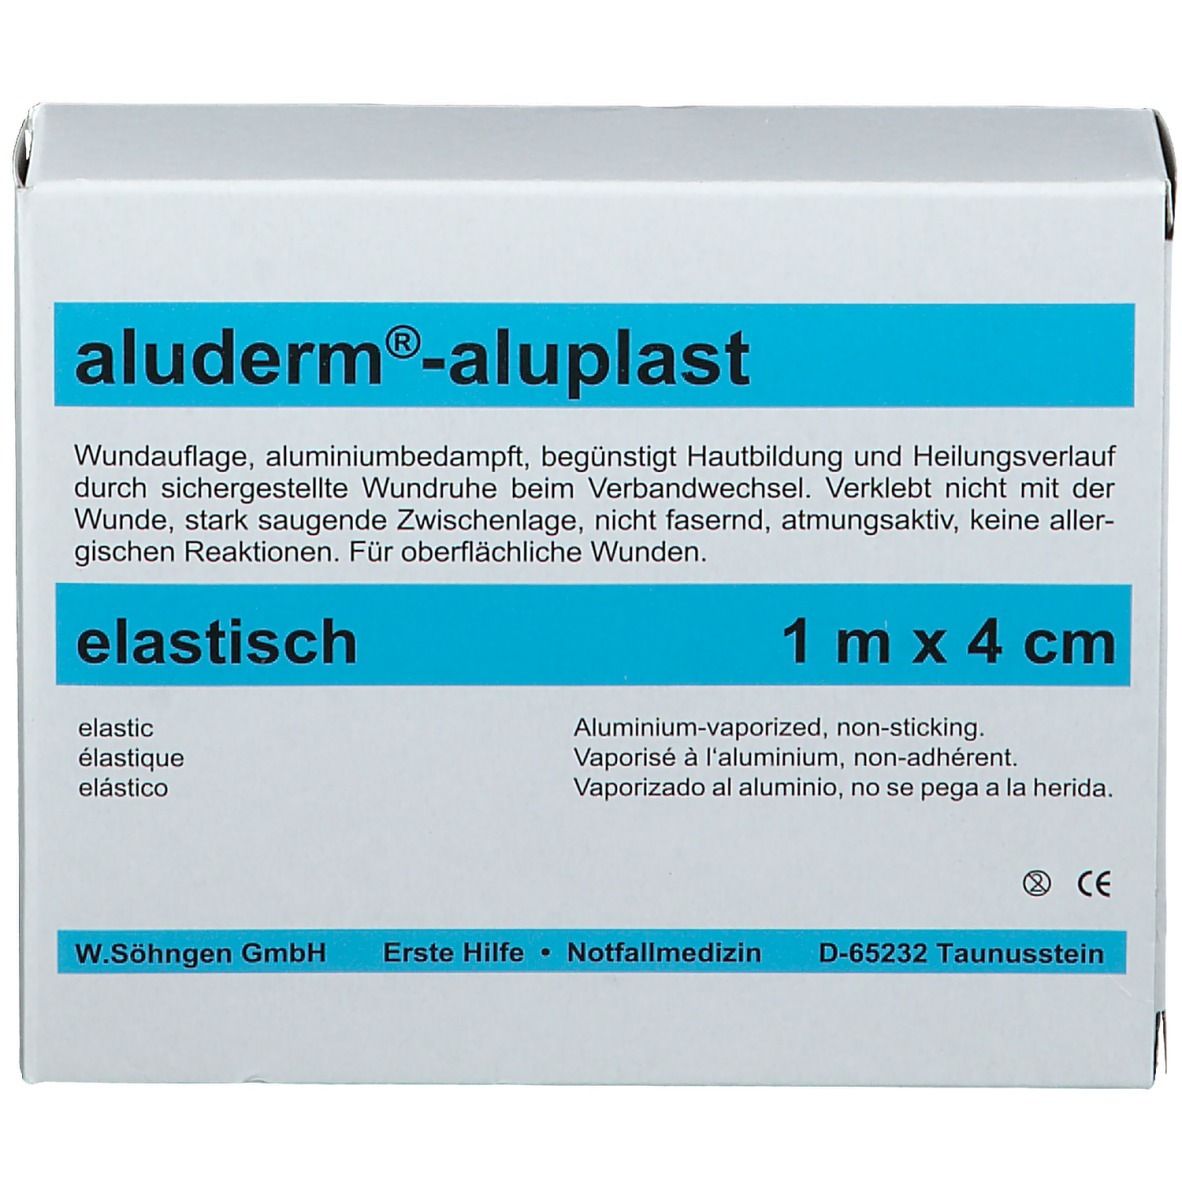 Söhngen® aluderm®-aluplast elastisches Pflaster | 1 m x 4 cm  